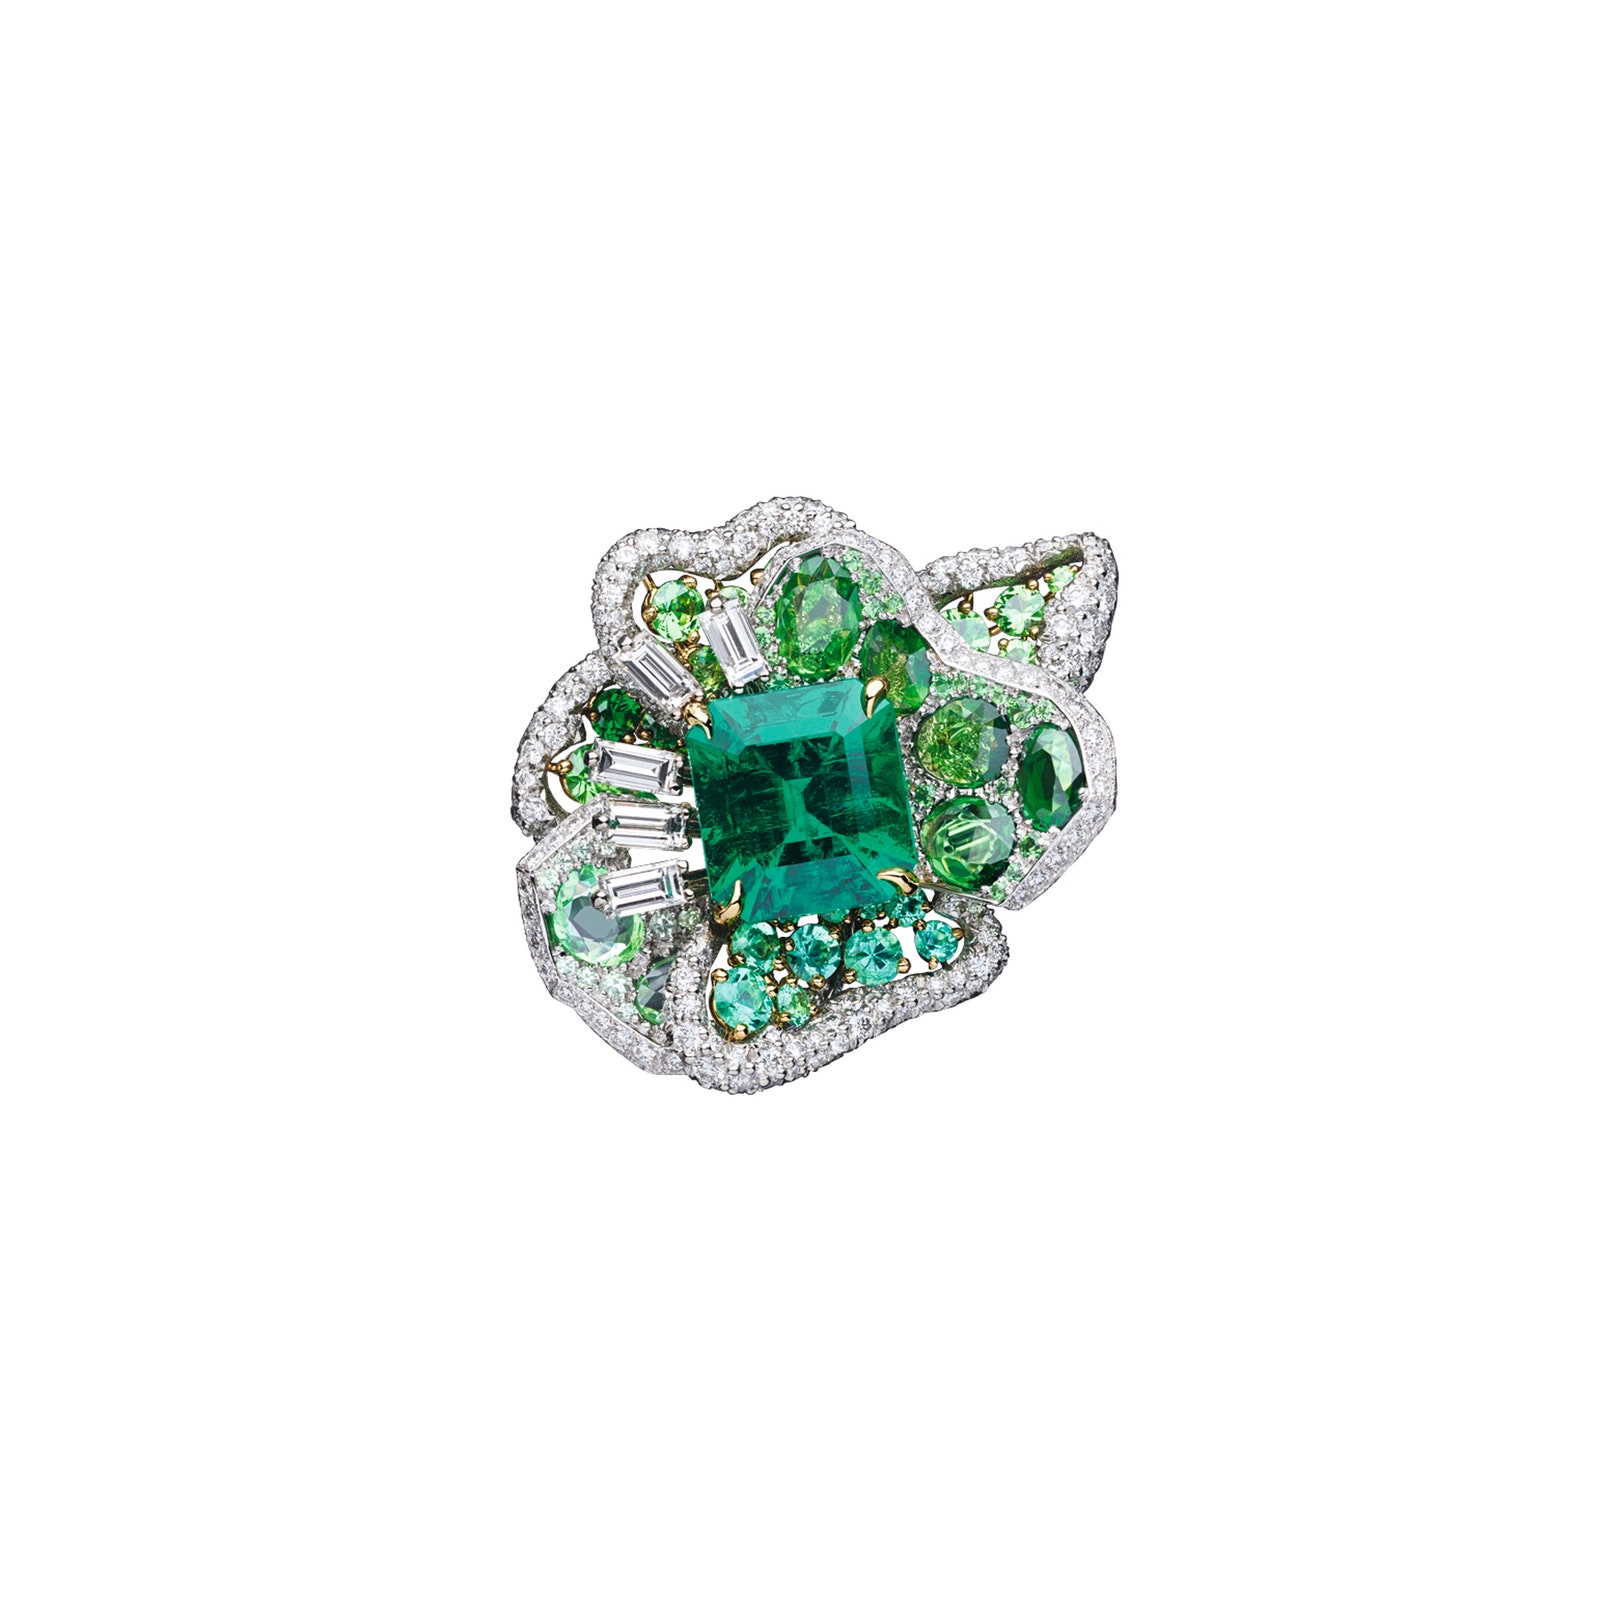 Кольцо Rose Vitrail Emerald с бриллиантами и изумрудами. Центральный камень родом из Колумбии.